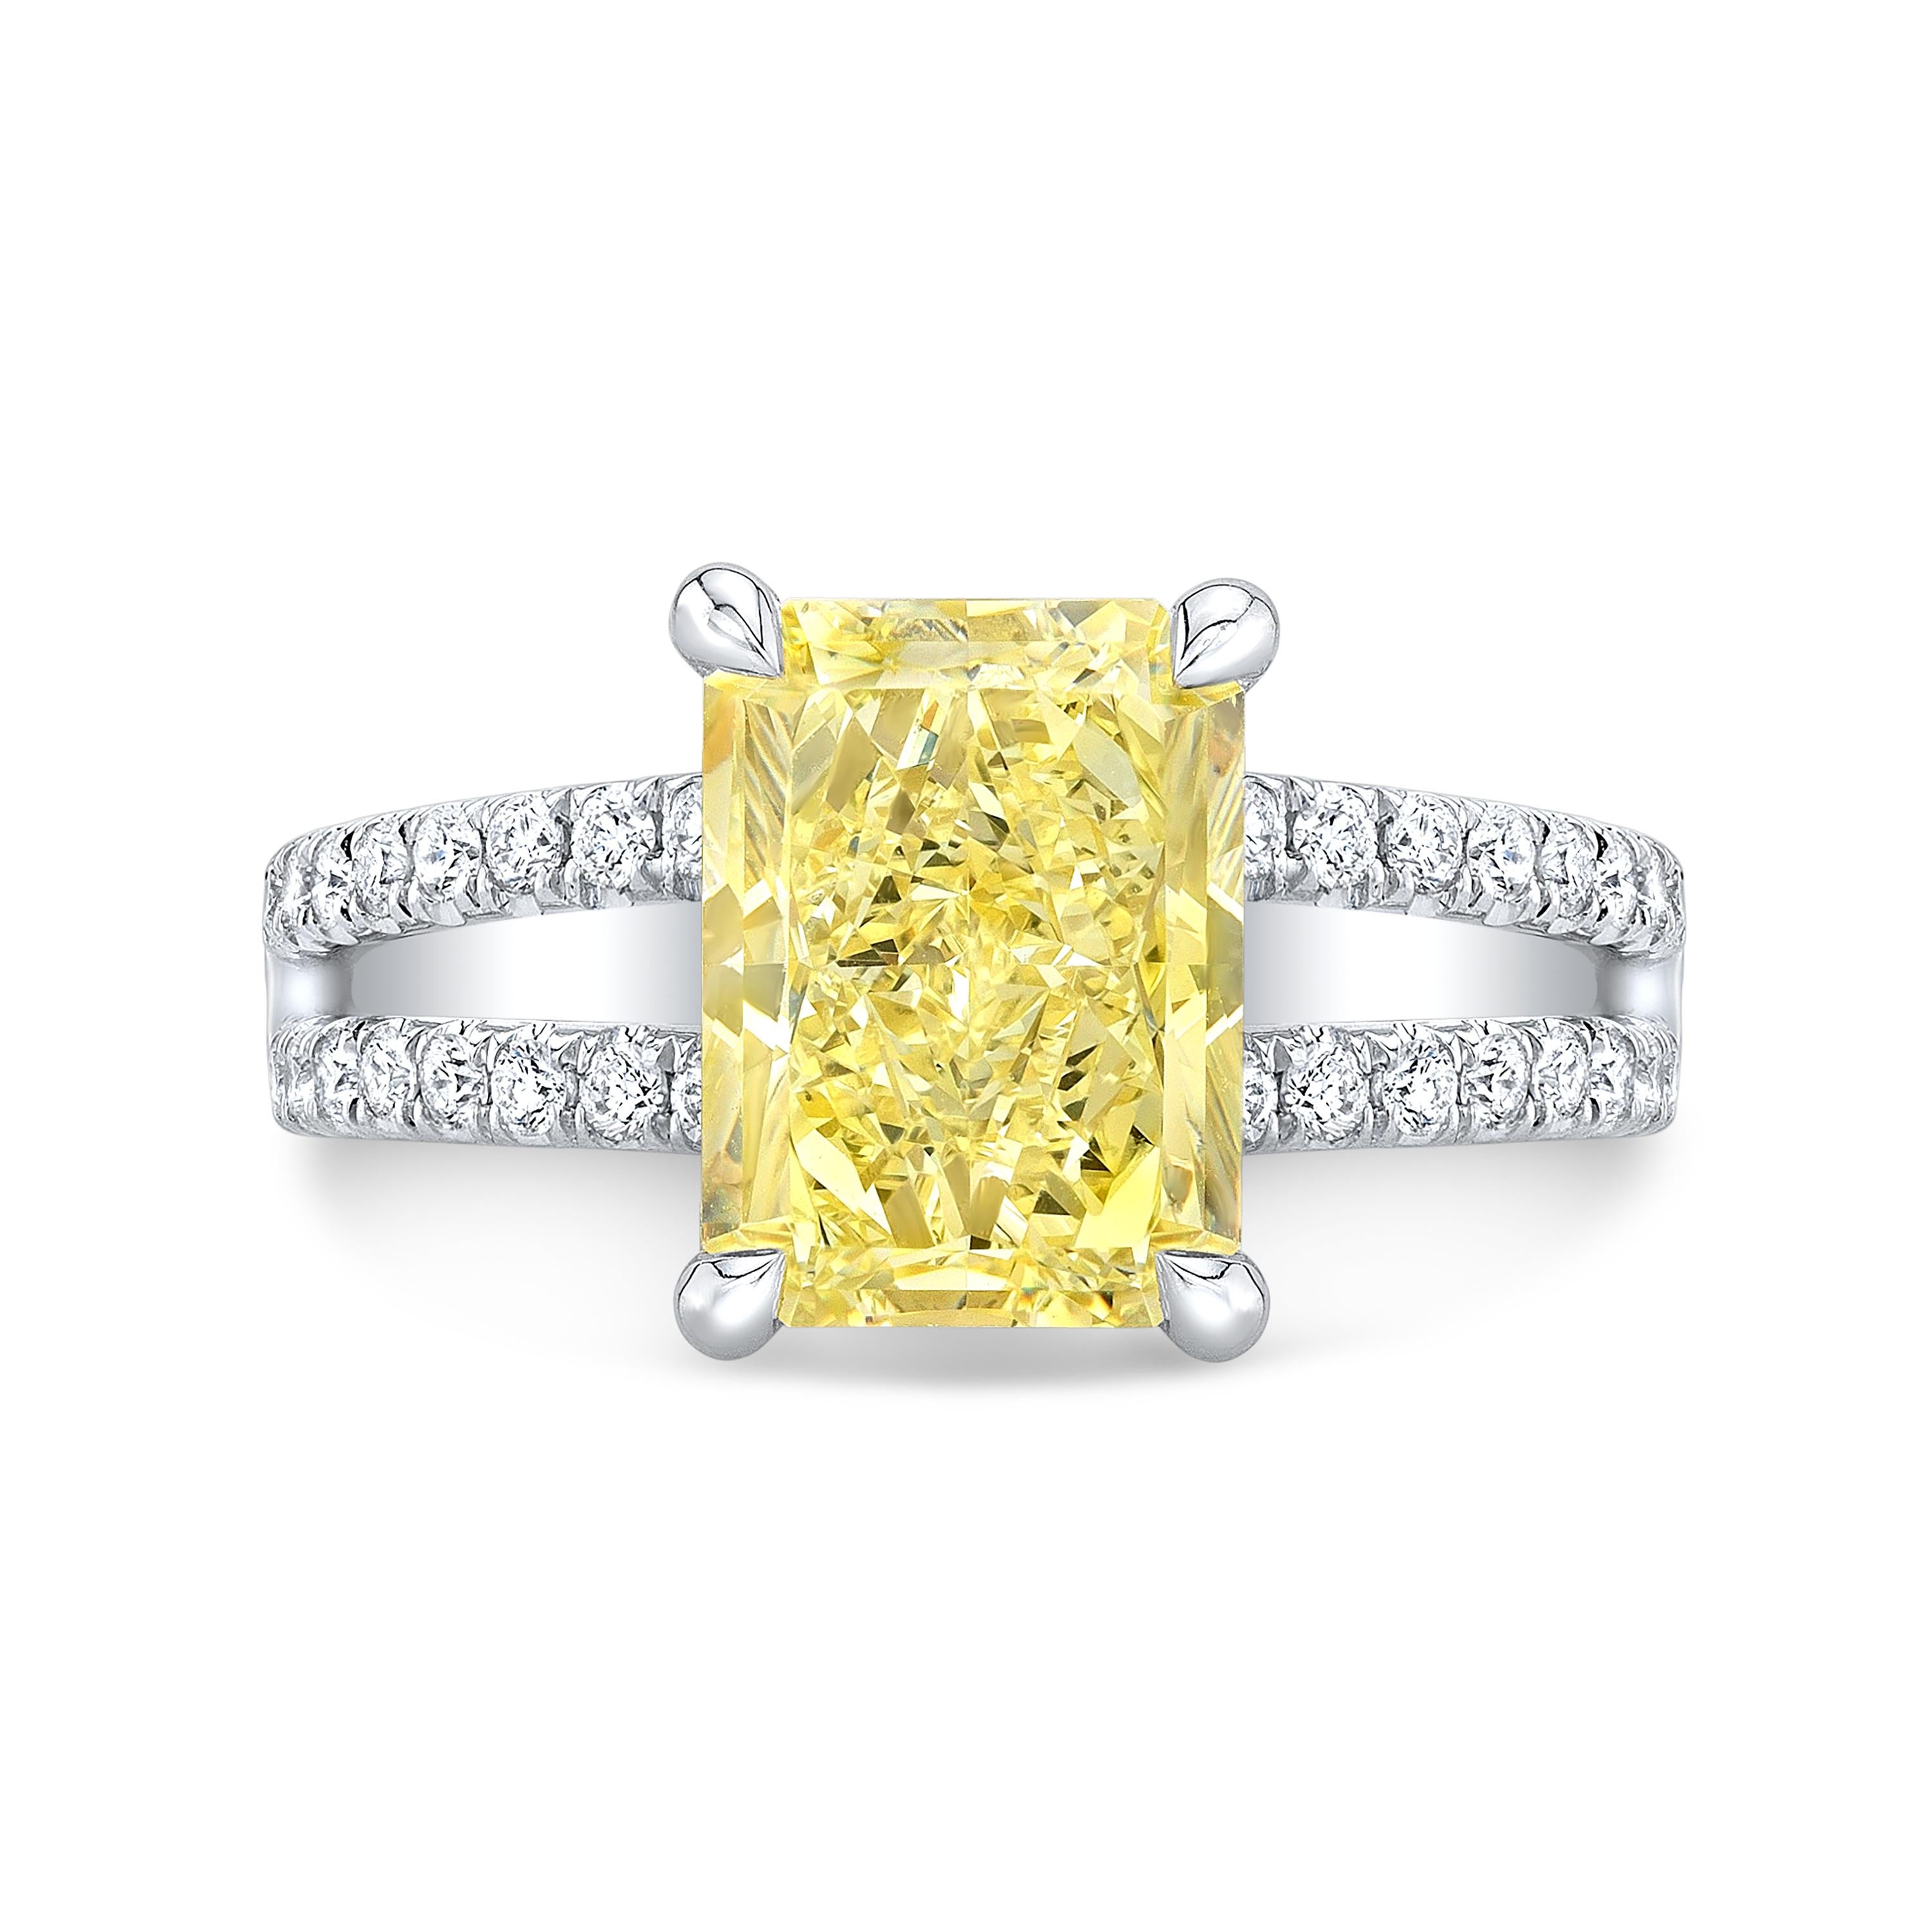 Die schlichte Eleganz dieses Verlobungsrings mit einem kanariengelben Diamanten bringt die Schönheit seines Herzstücks zur Geltung. 

Ring-Informationen
Metall	: 18K Weiß & Gelbgold
(Bitte kontaktieren Sie uns, wenn Sie dies in Platin